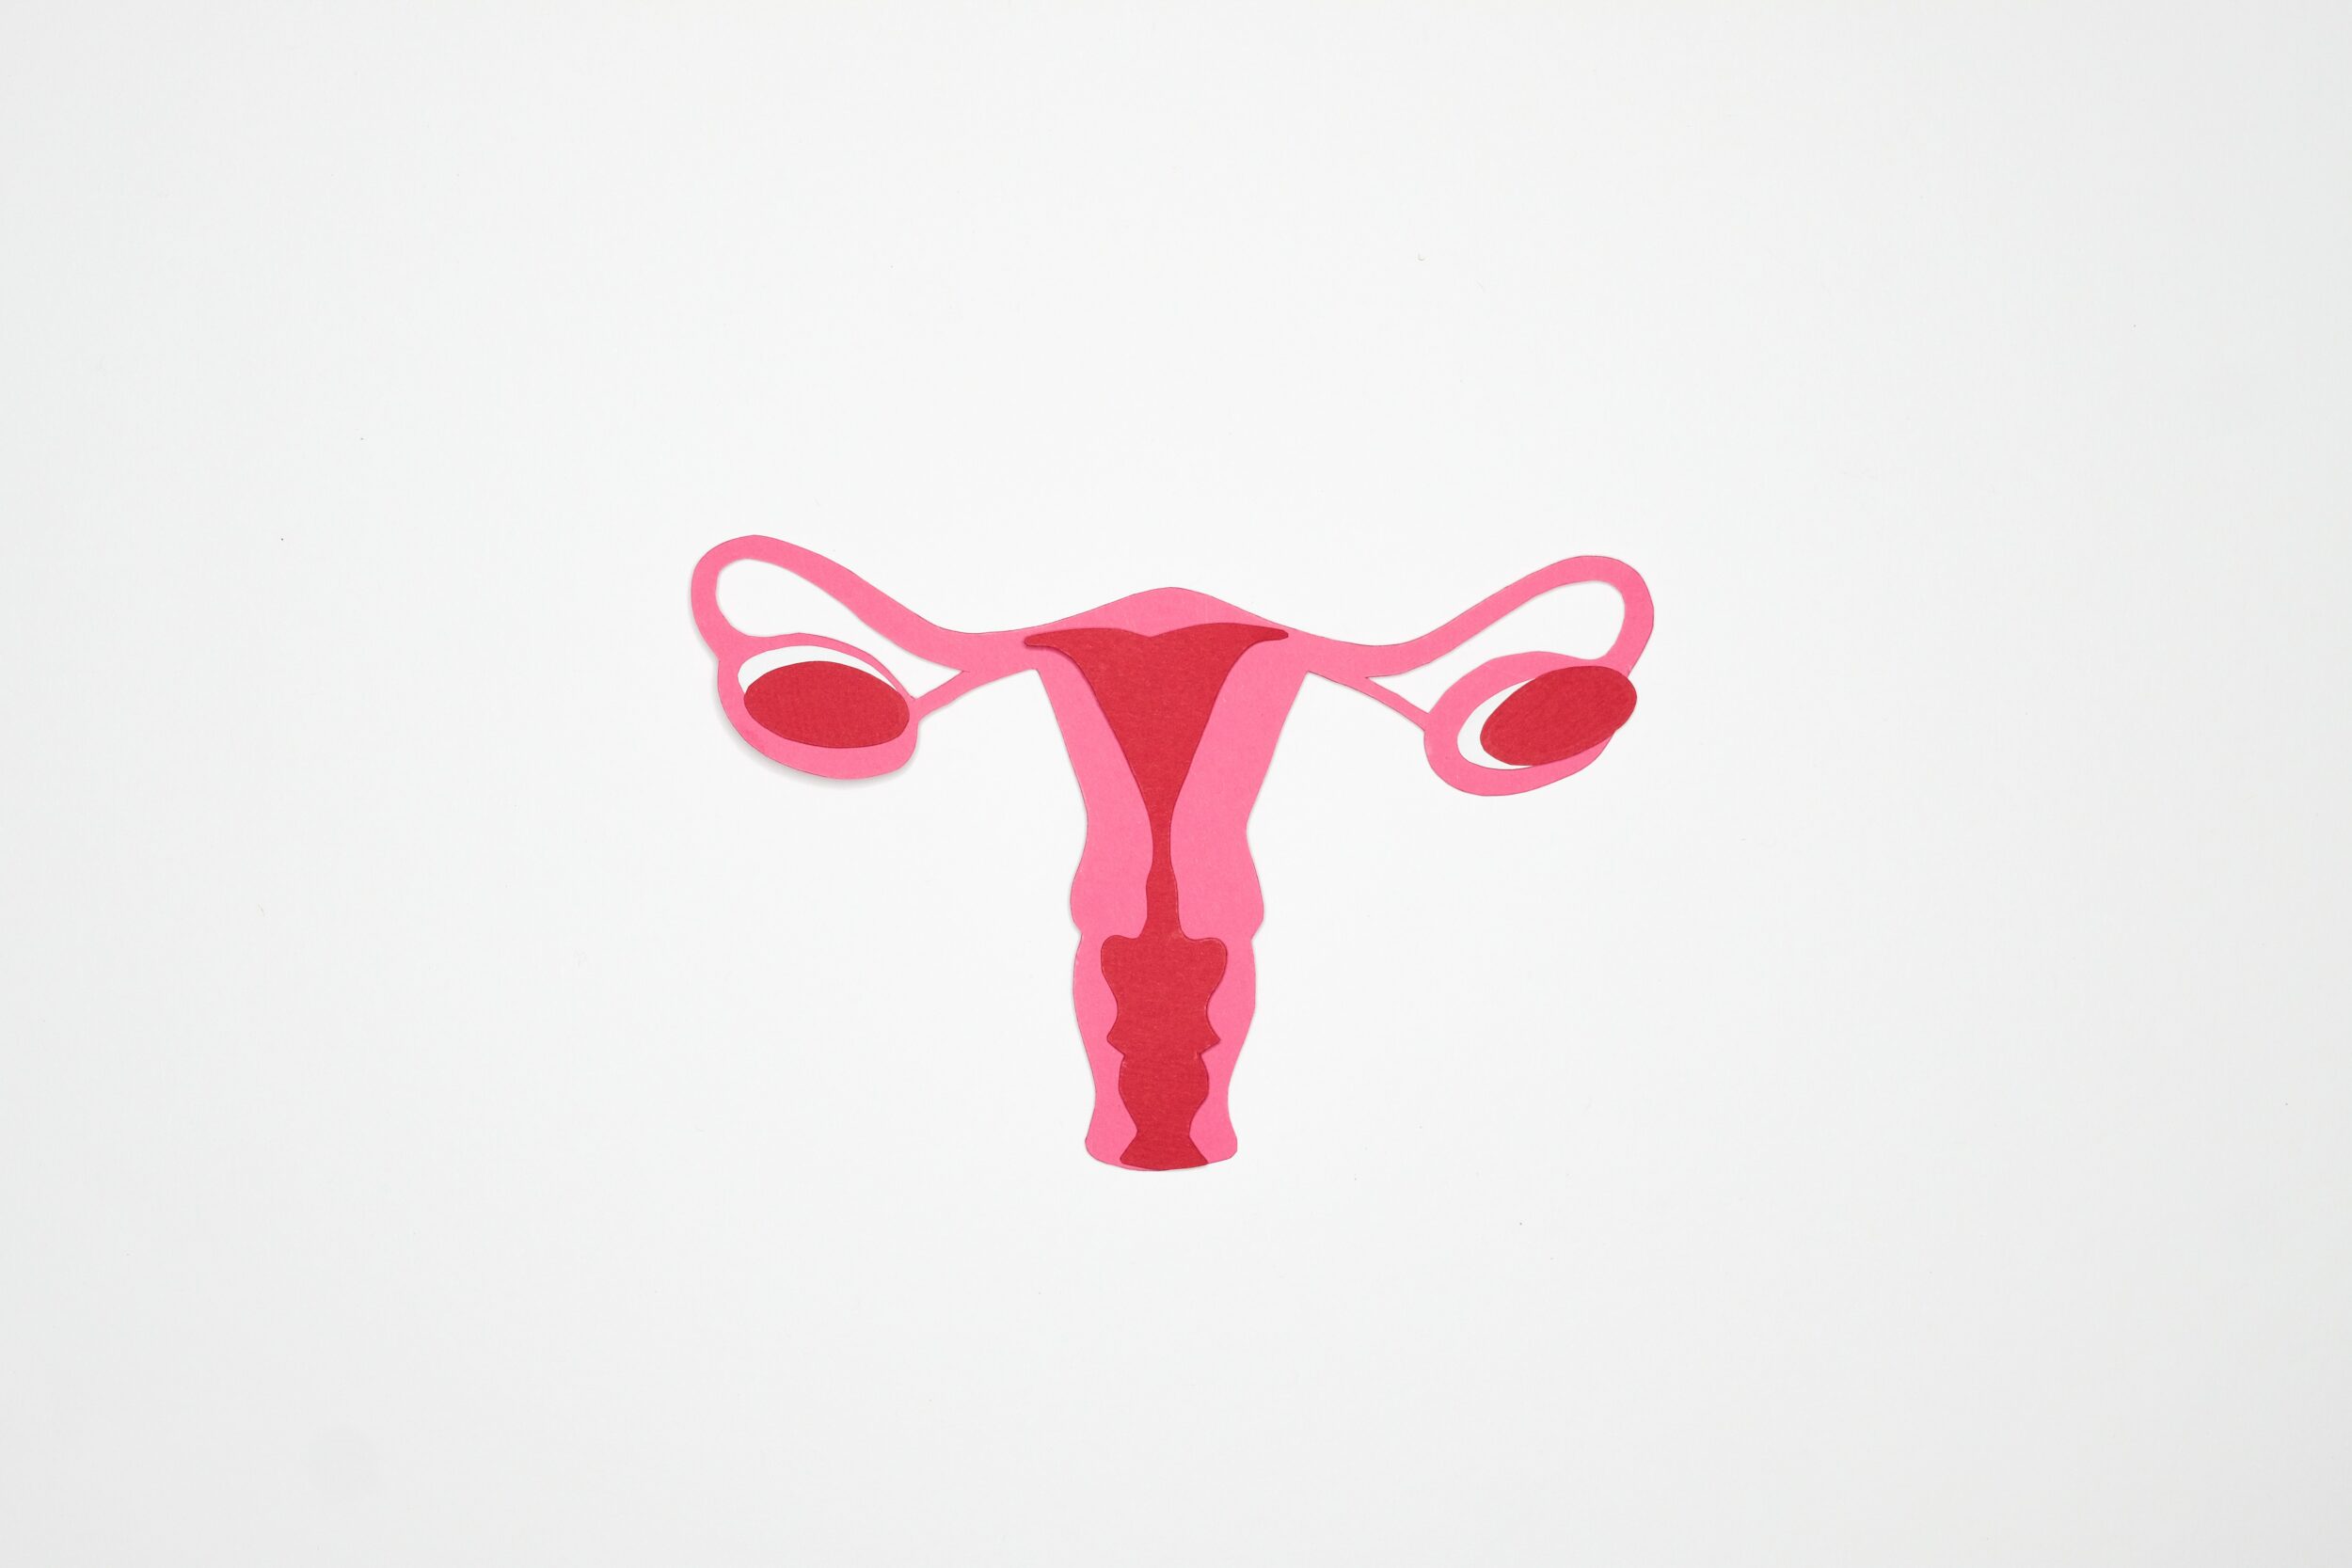 Utérus schématisé / Pexels, Nadezhda Moryak